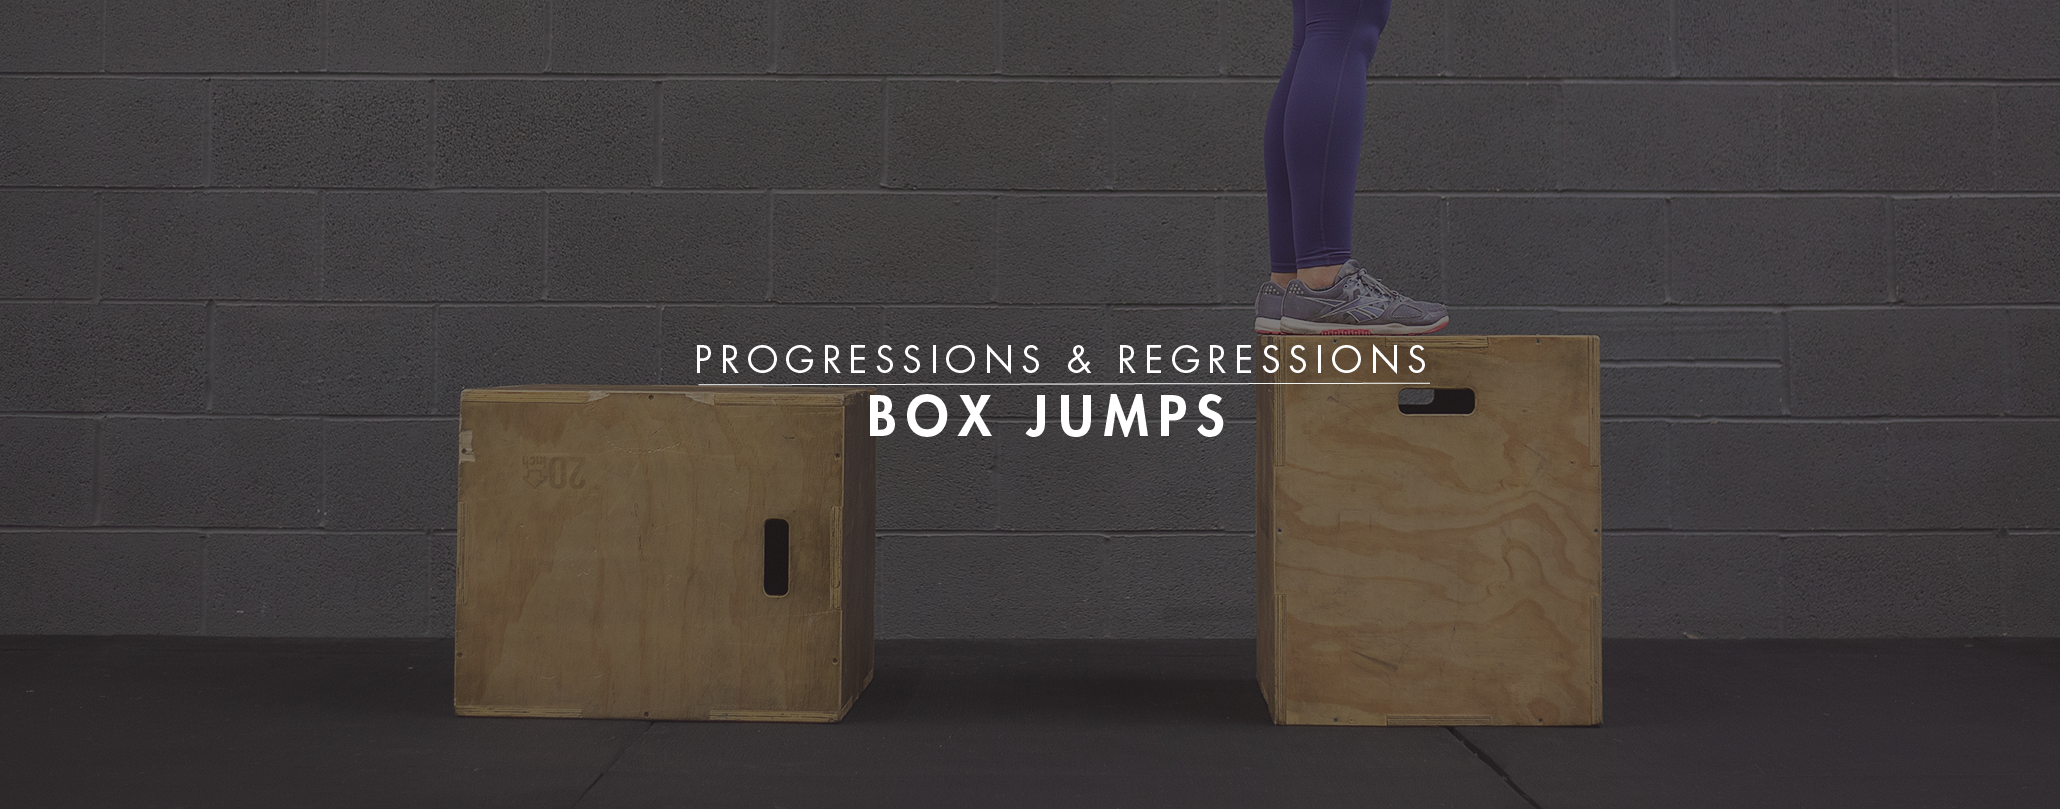 Progressions & Regressions: Box Jumps